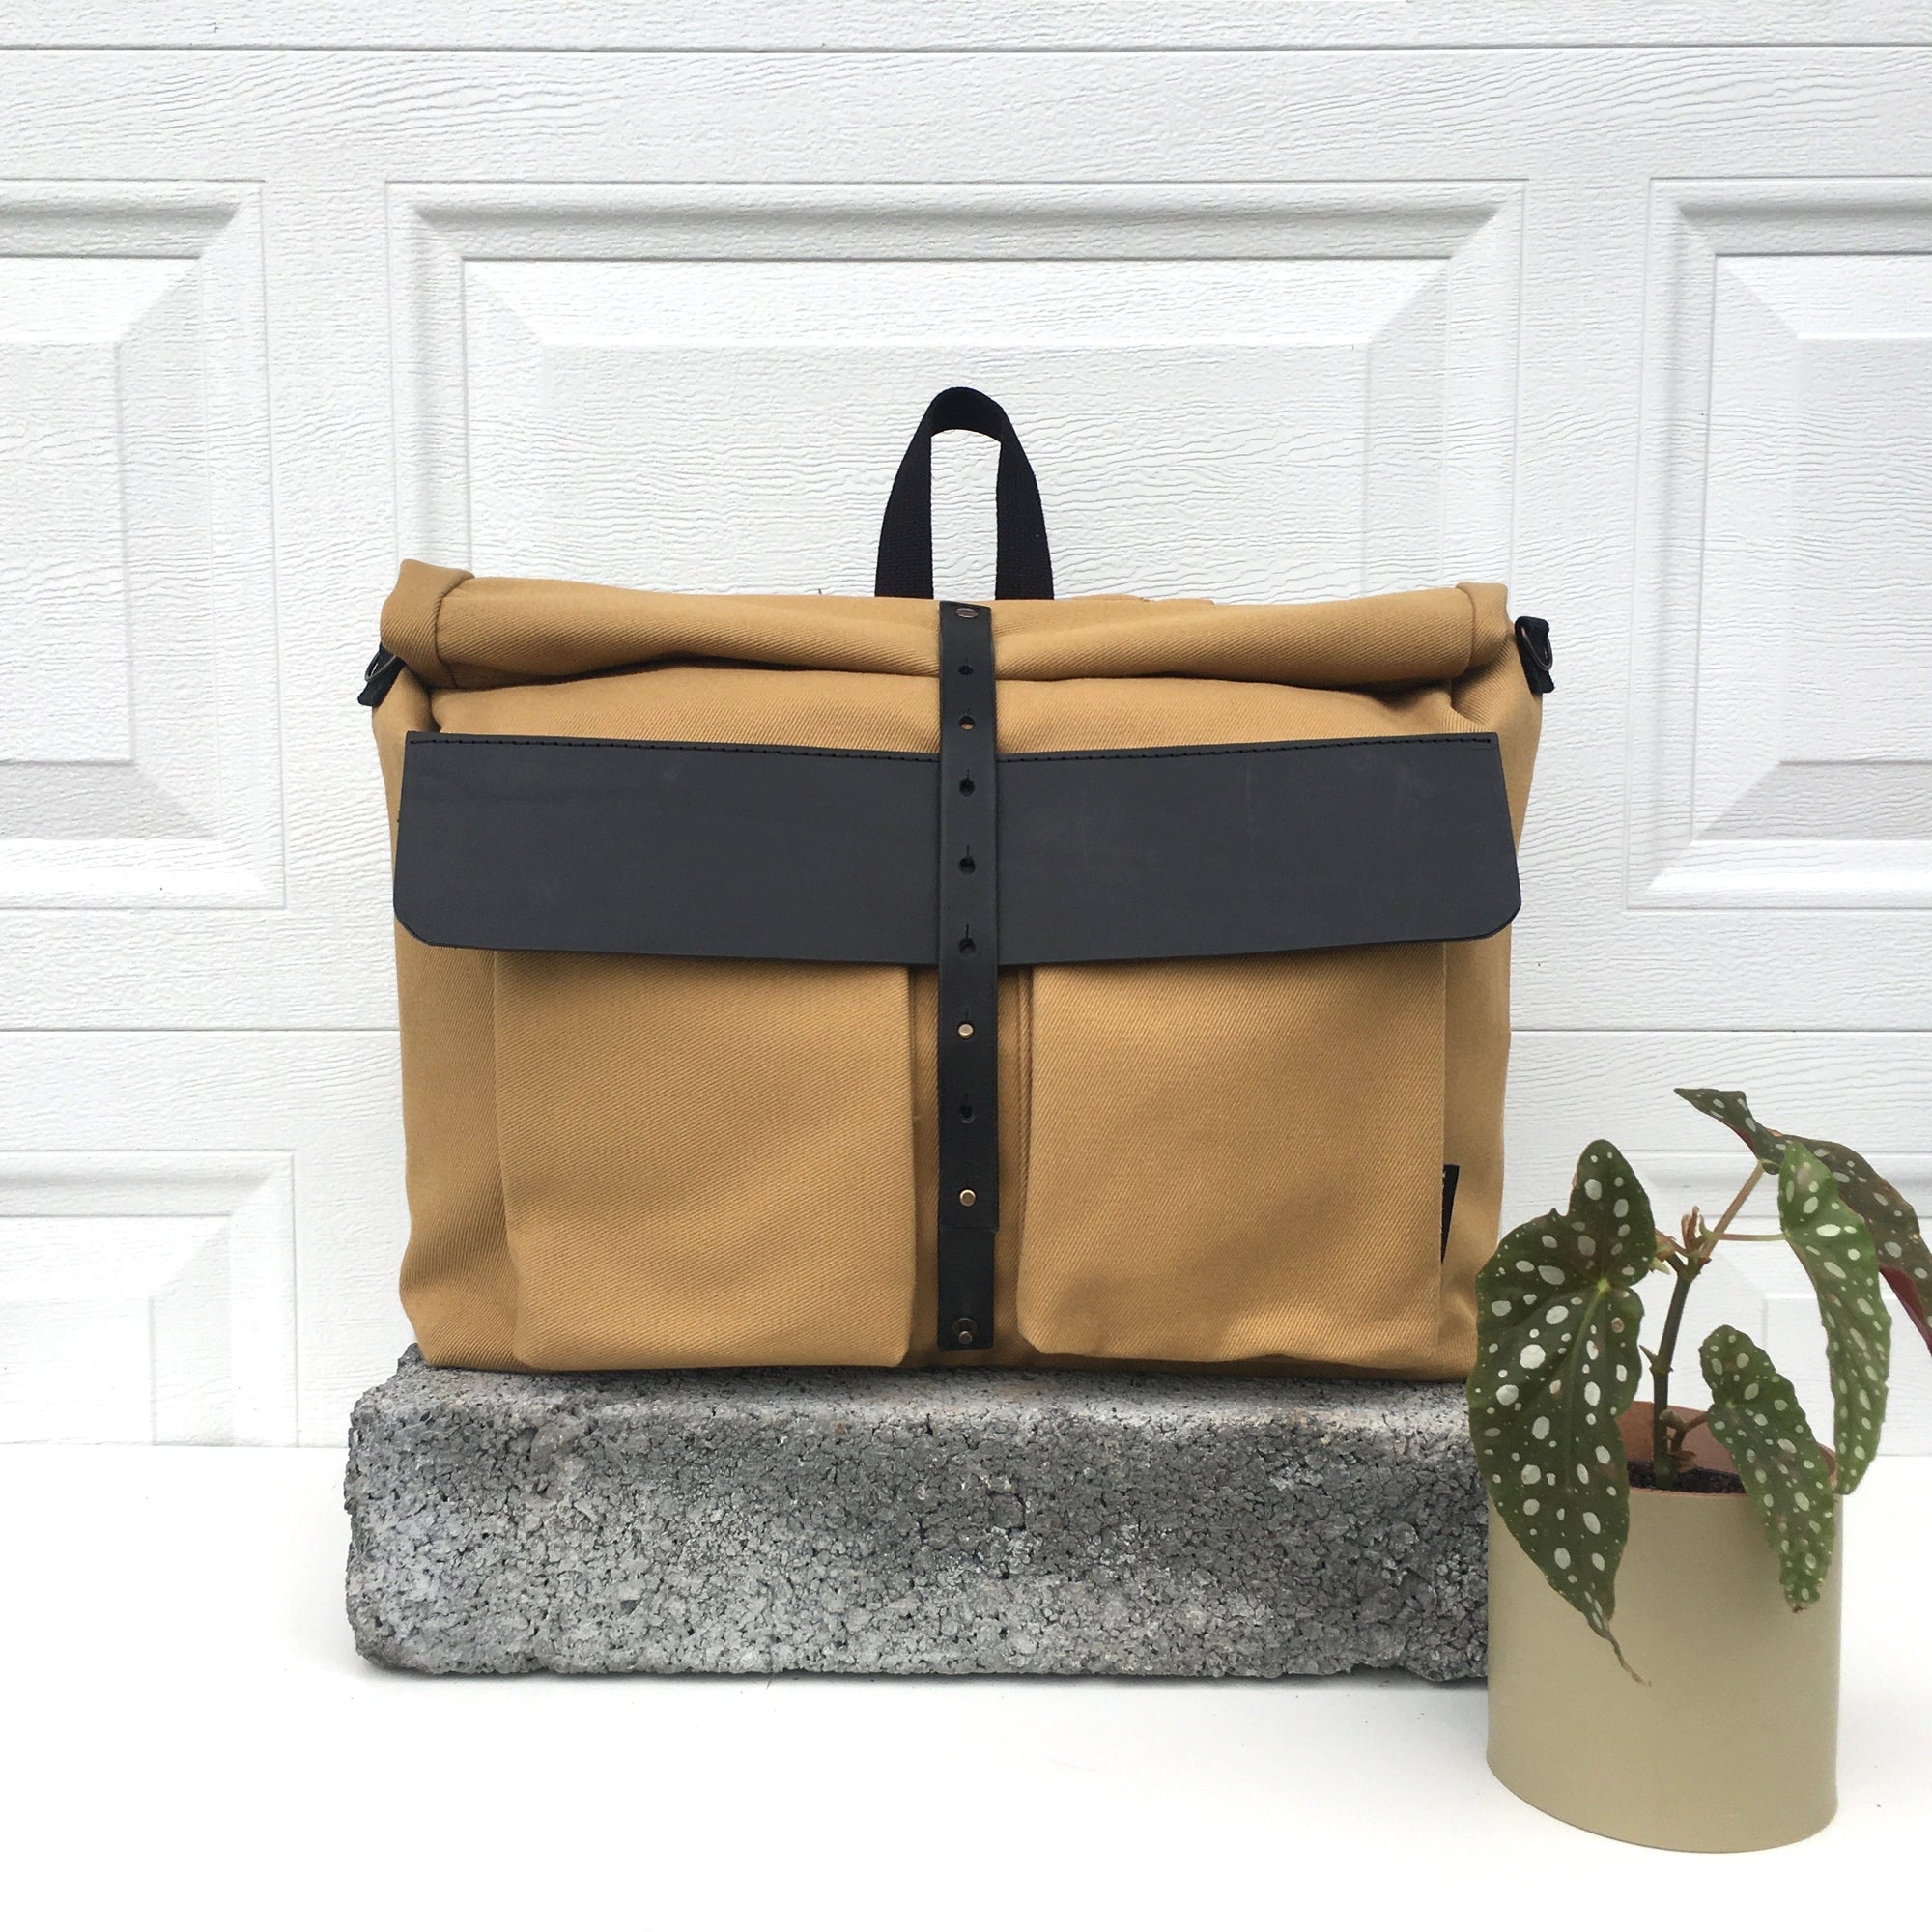 Howl Bag - Mustard | Shoulder bag, backpack - Vel-Oh